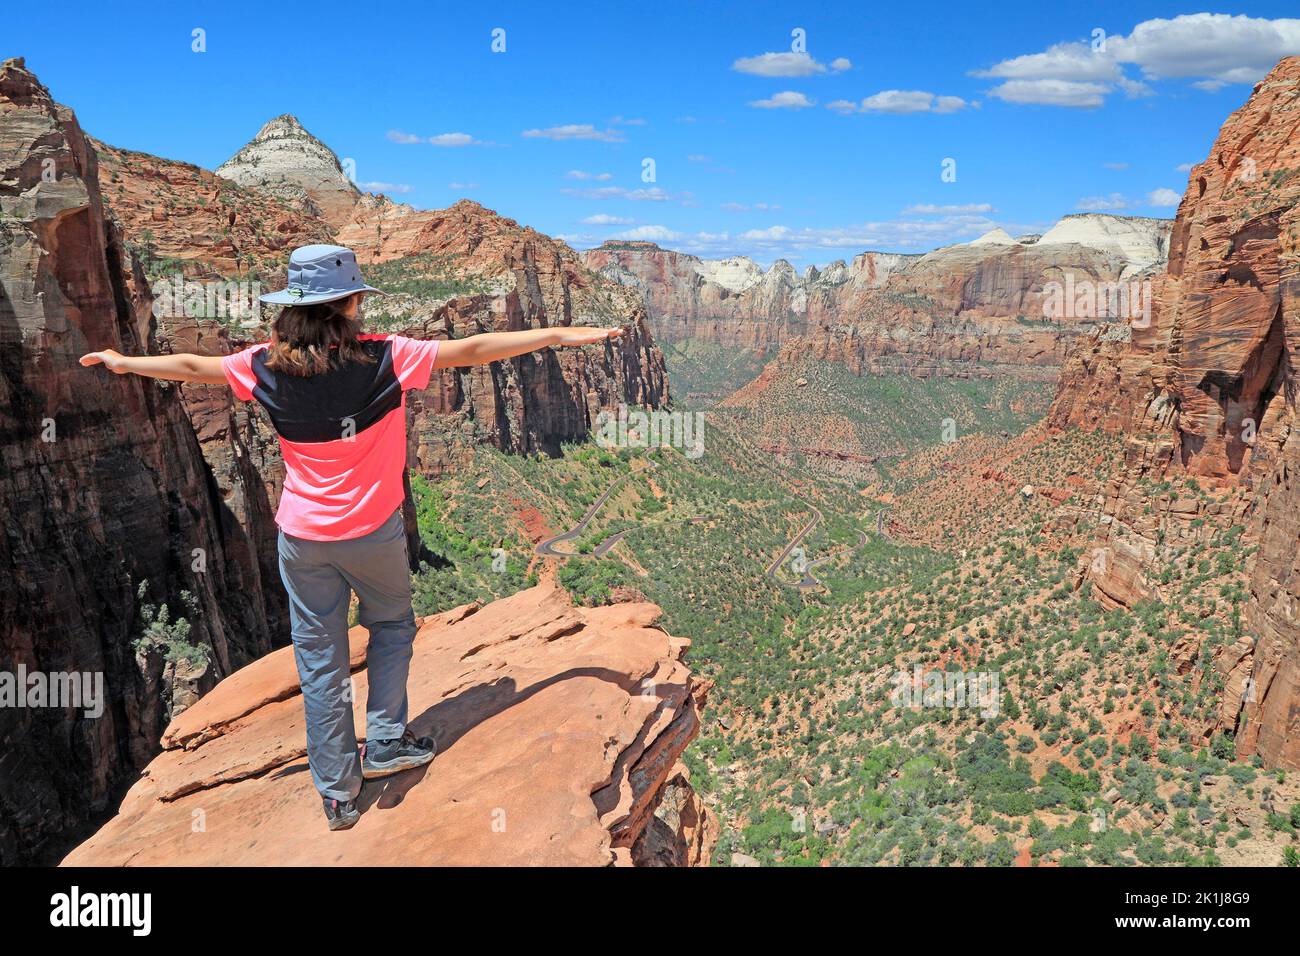 Jeune fille touristique debout sur la crête et admirant le paysage de Zion Canyon dans l'Utah, États-Unis Banque D'Images